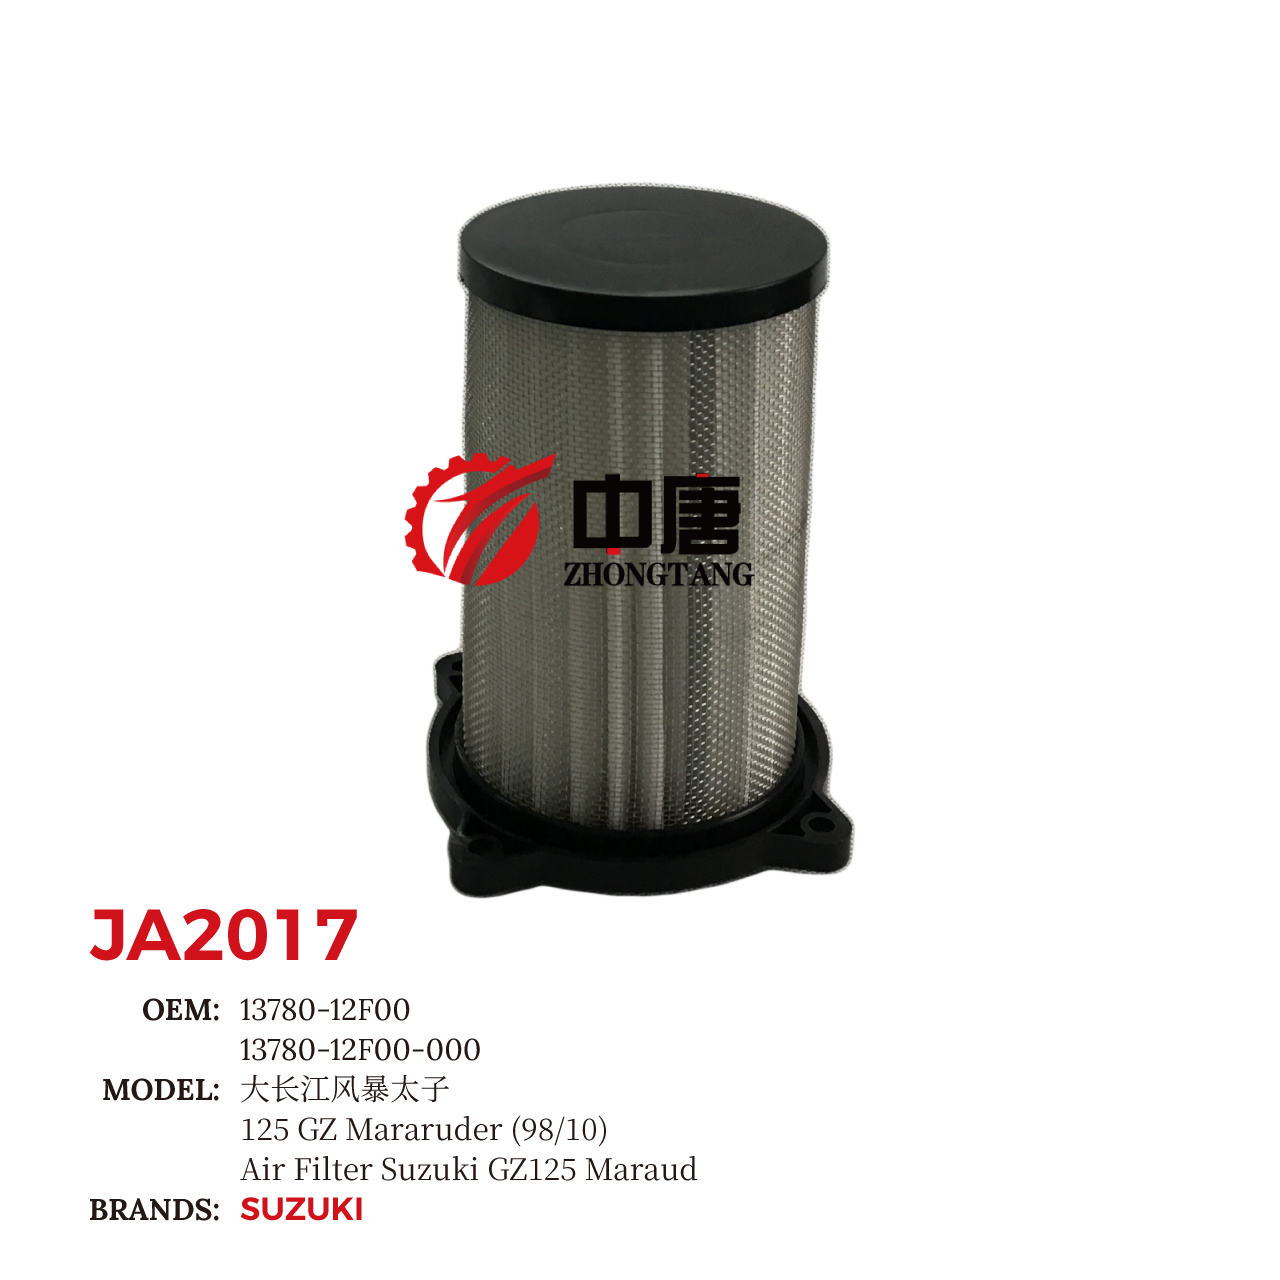 images/JA2017/JA2017_ZT_1.jpg